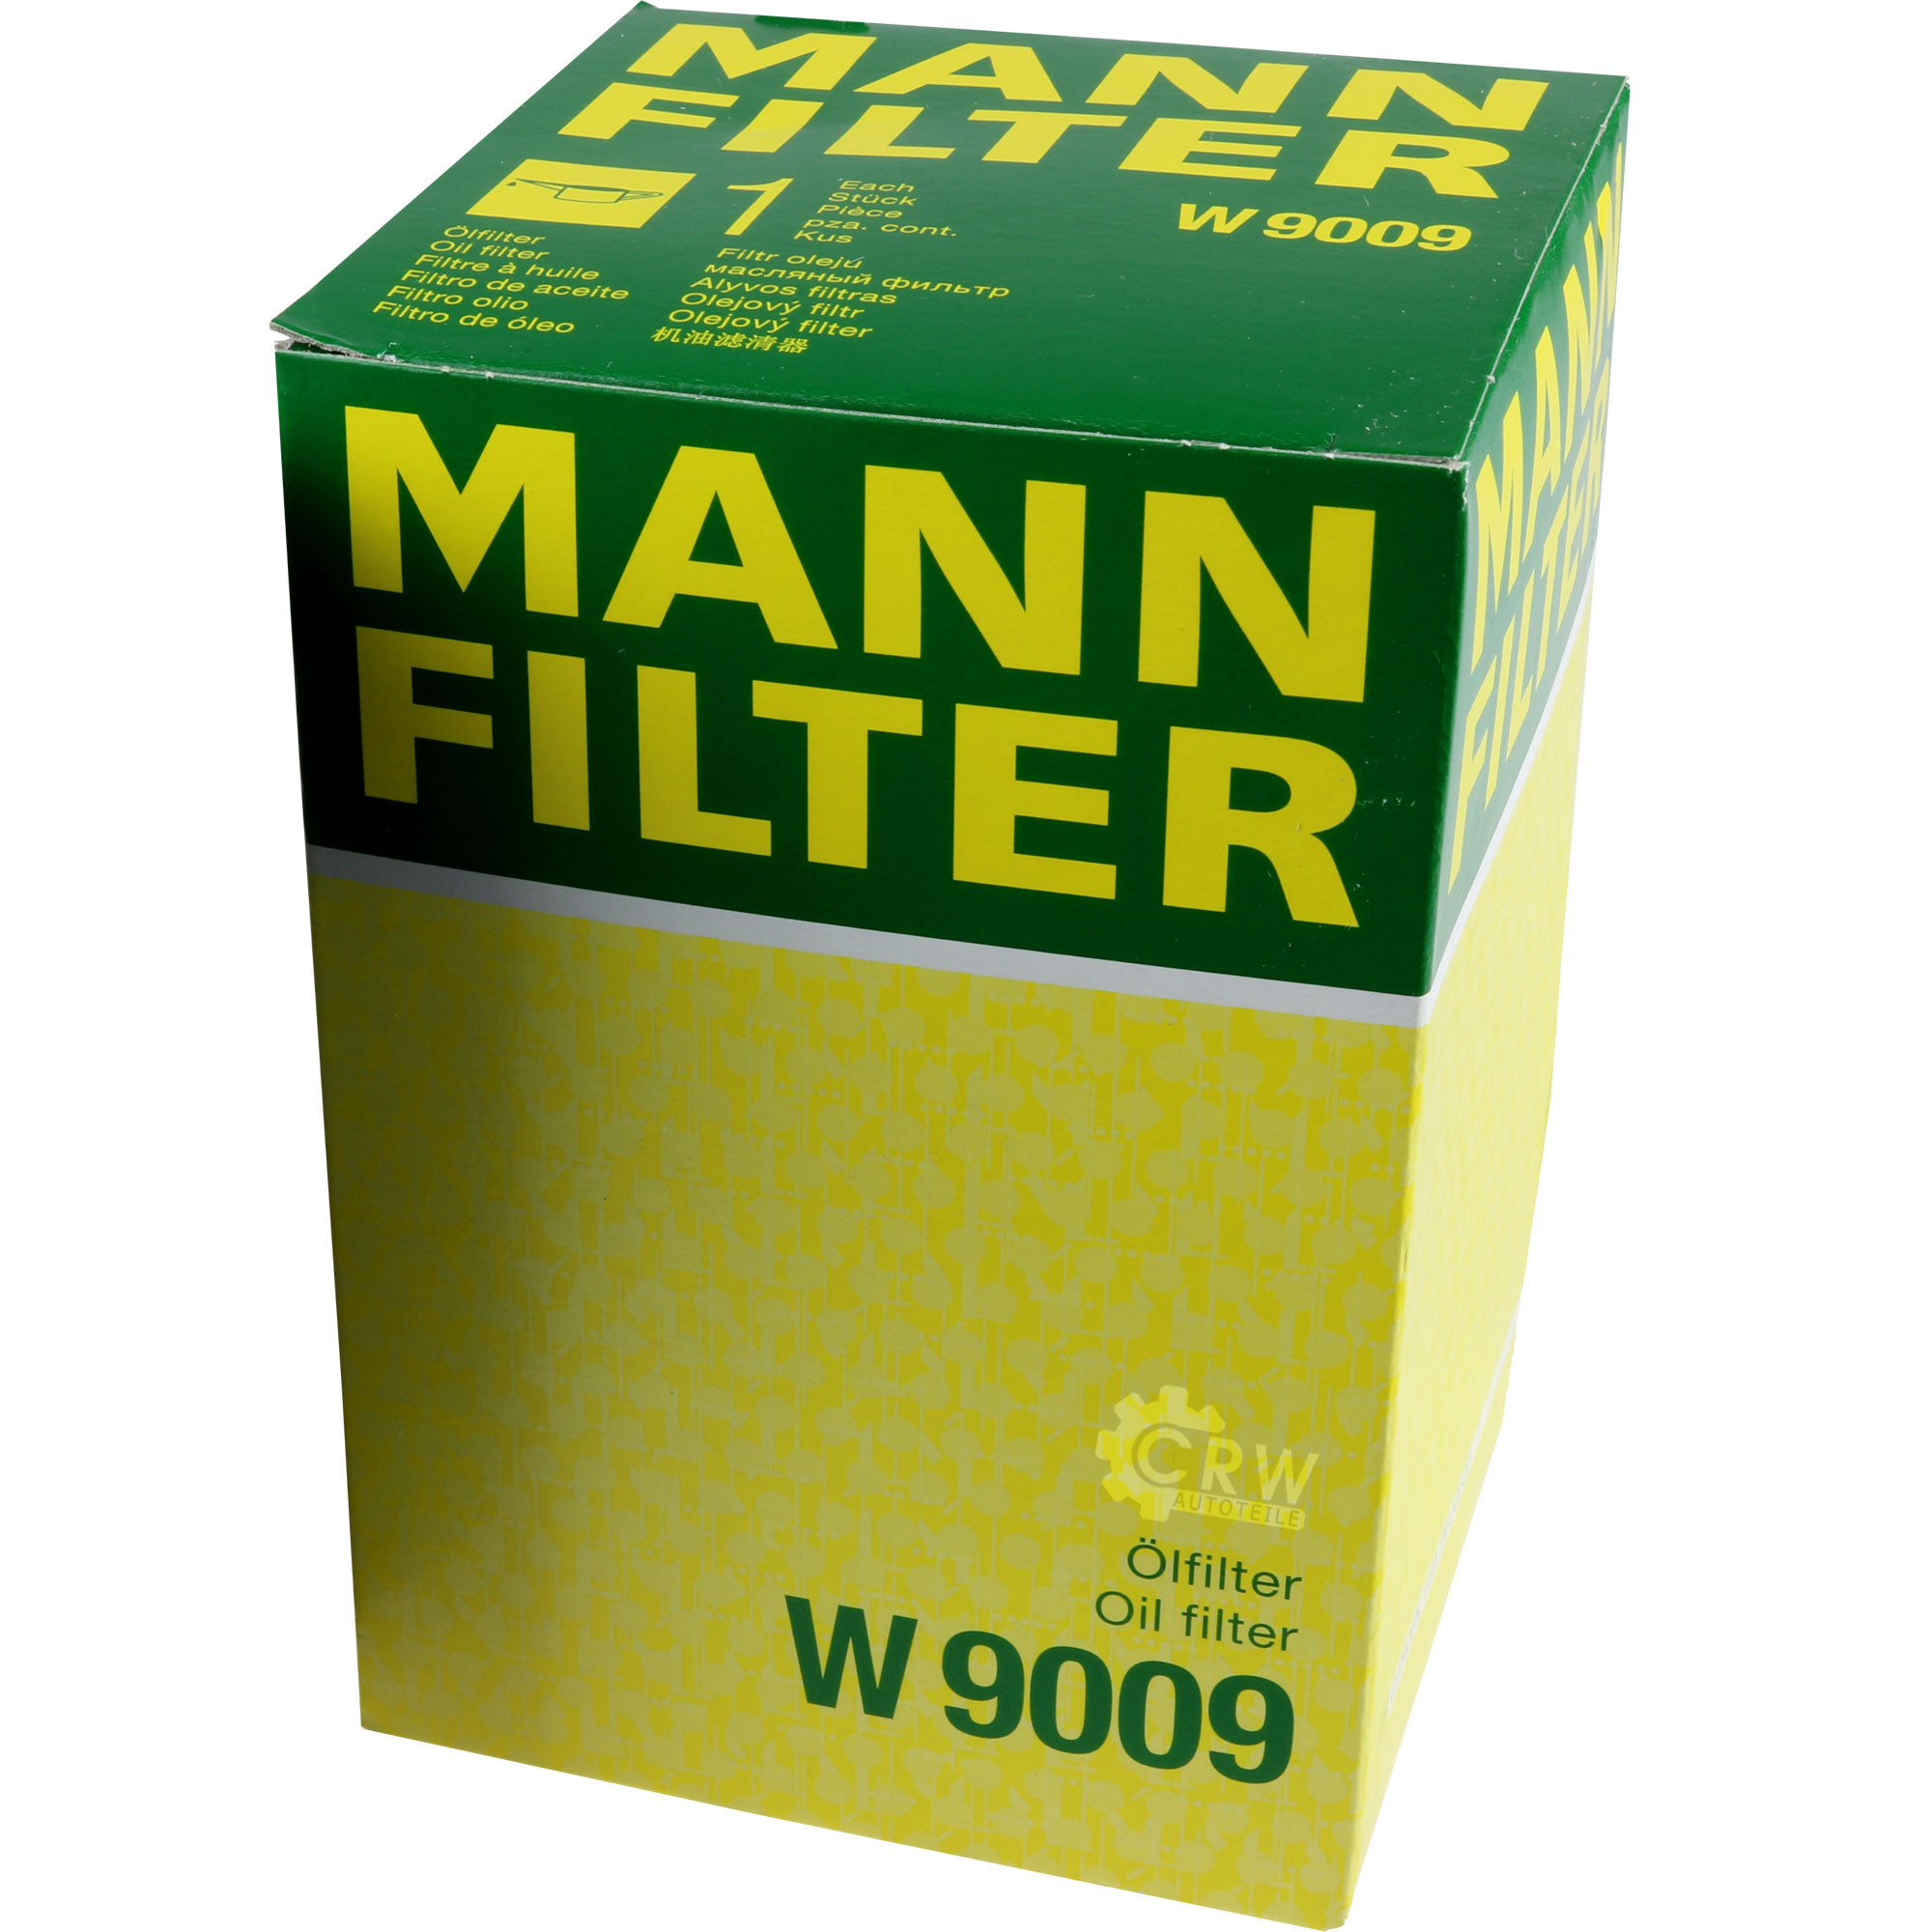 MANN-FILTER Ölfilter W 9009 Oil Filter